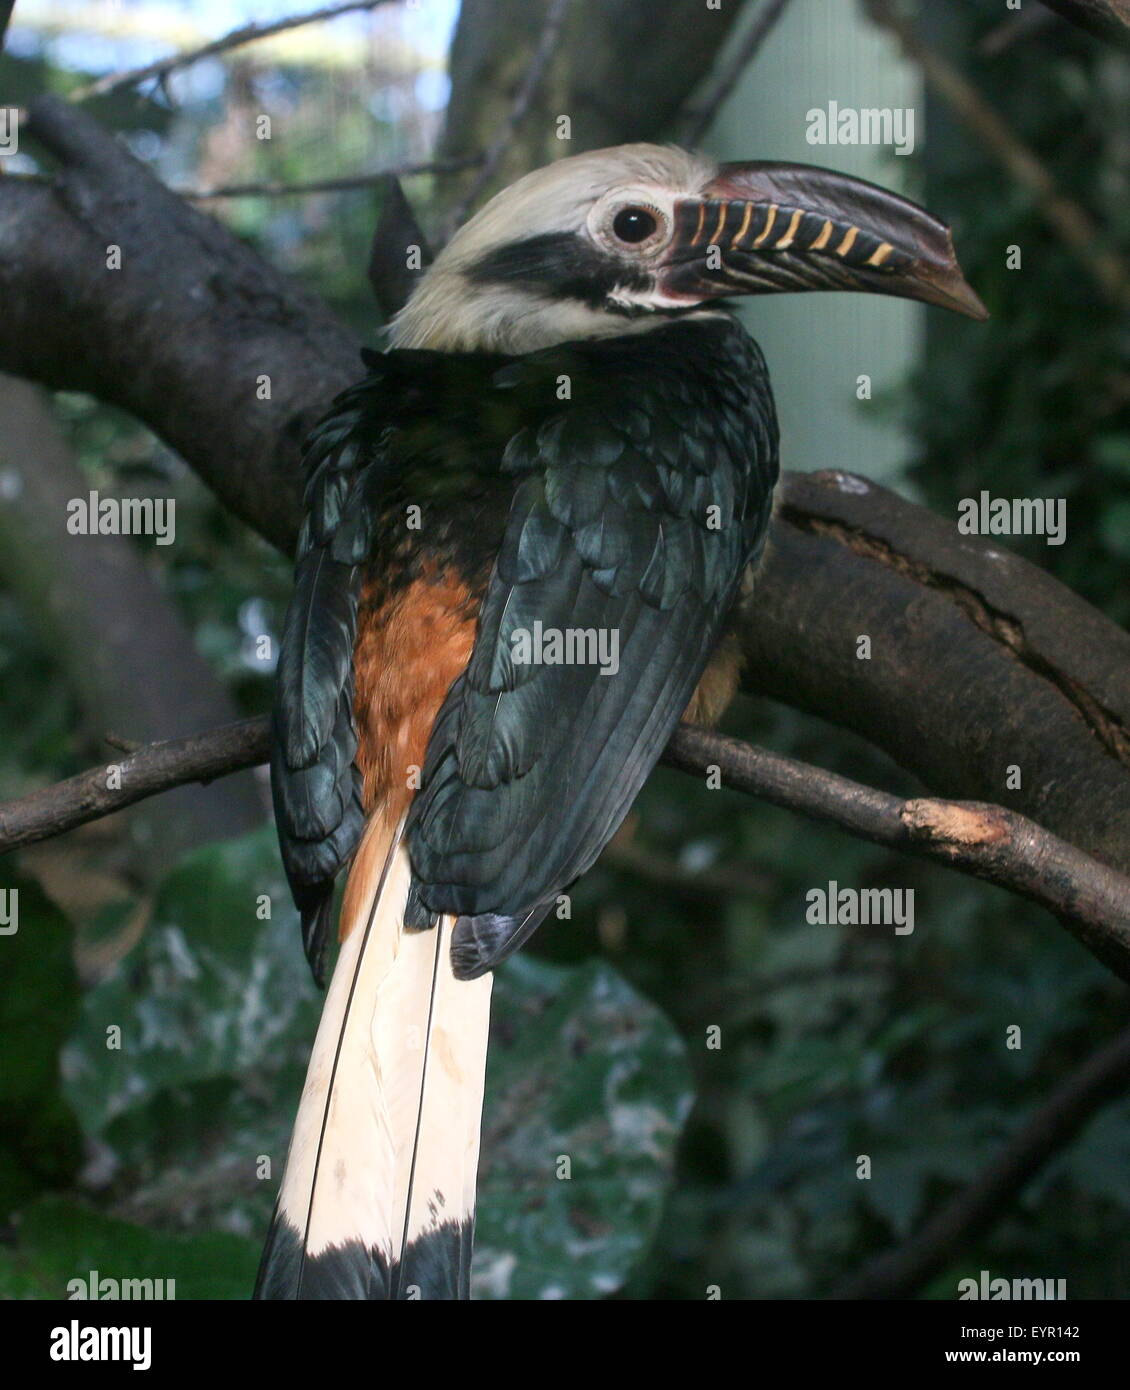 Männliche Visayan Tarictic Hornbill (Penelopides Panini), native zu den Philippinen Visayas - Gefangenen Vogel (Avifauna Vogel Zoo) Stockfoto